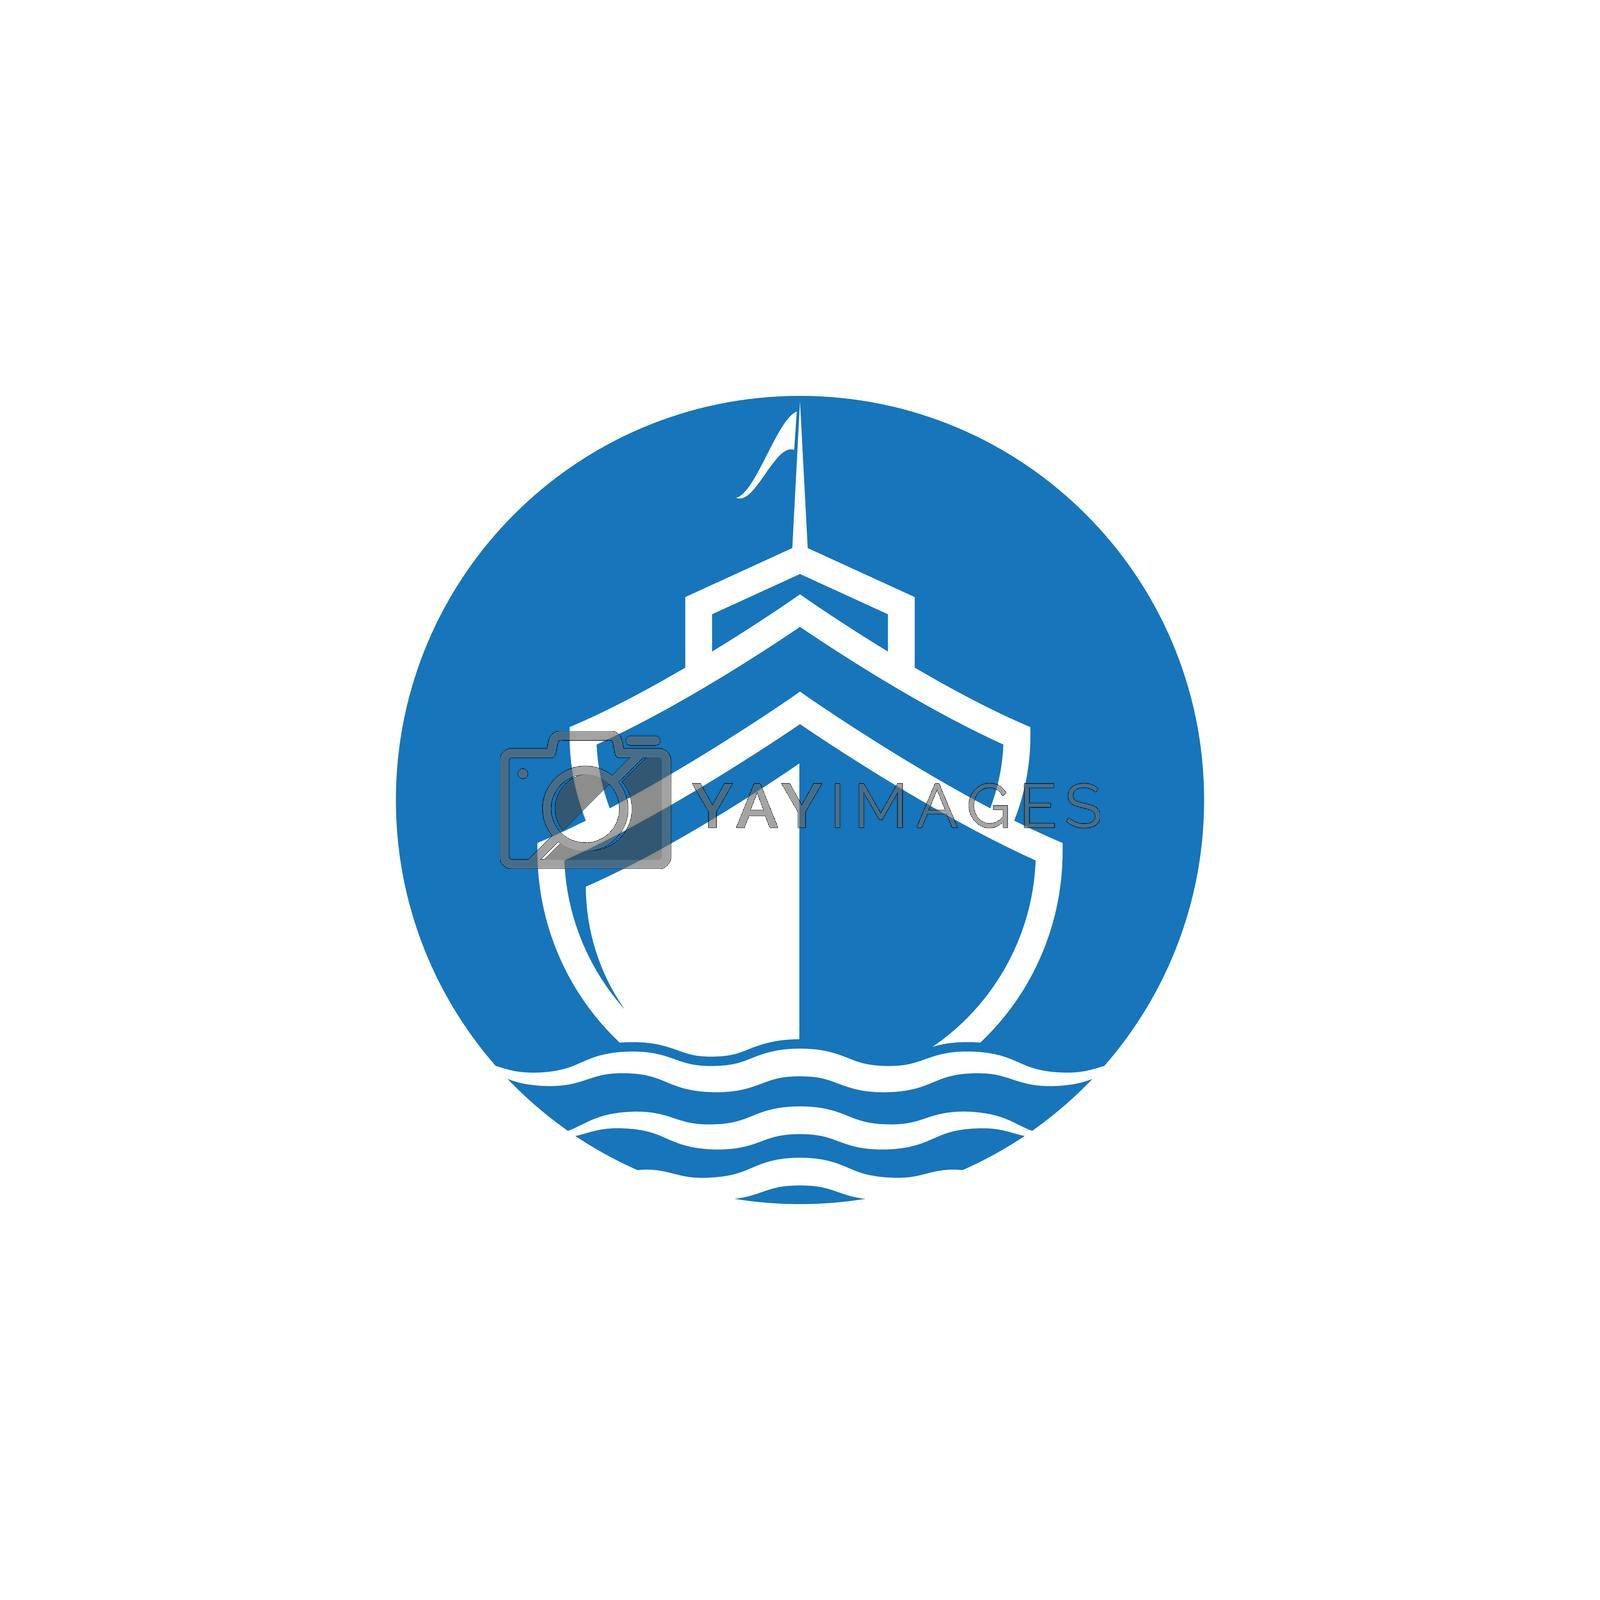 Cruise ship Logo Template vector icon design